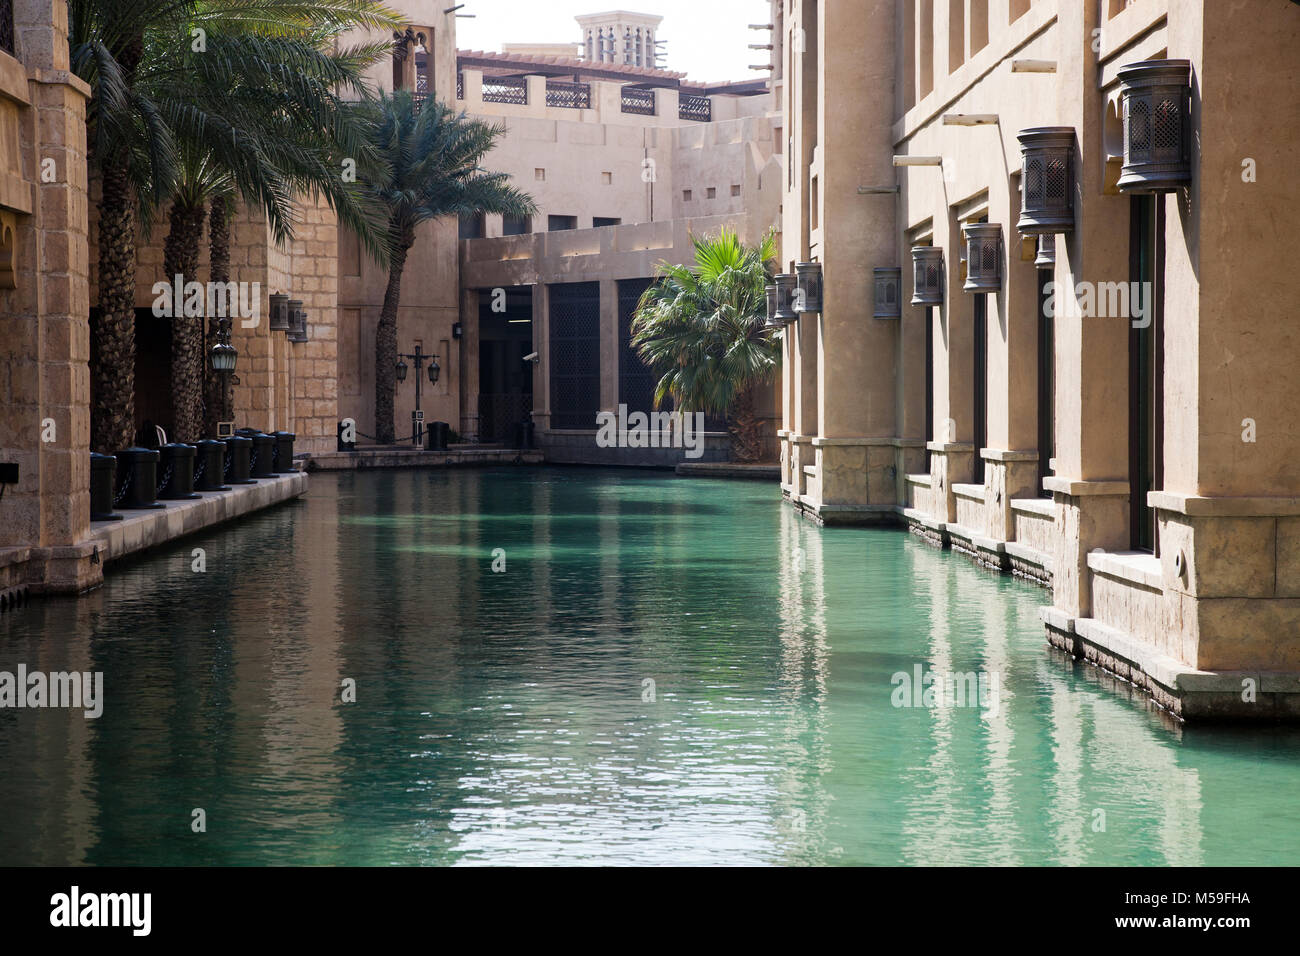 Dubaï, Émirats arabes unis - Février 2018 : vue sur le Souk Madinat Jumeirah. Madinat Jumeirah comprend deux hôtels et des clusters de 29 maisons arabes traditionnelles Banque D'Images